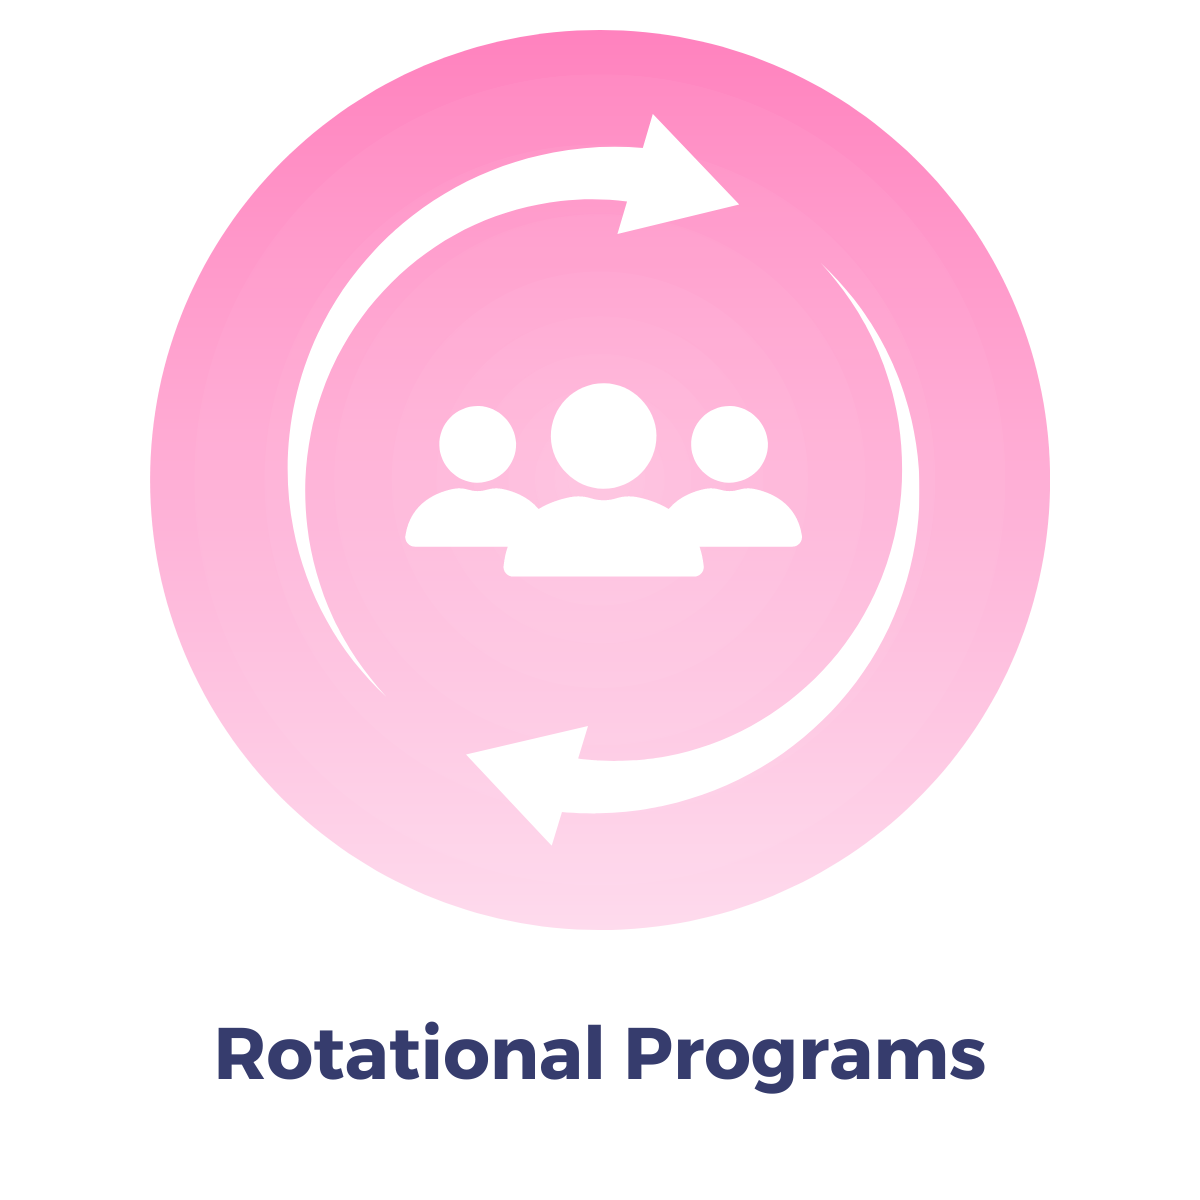 Rotational Programs